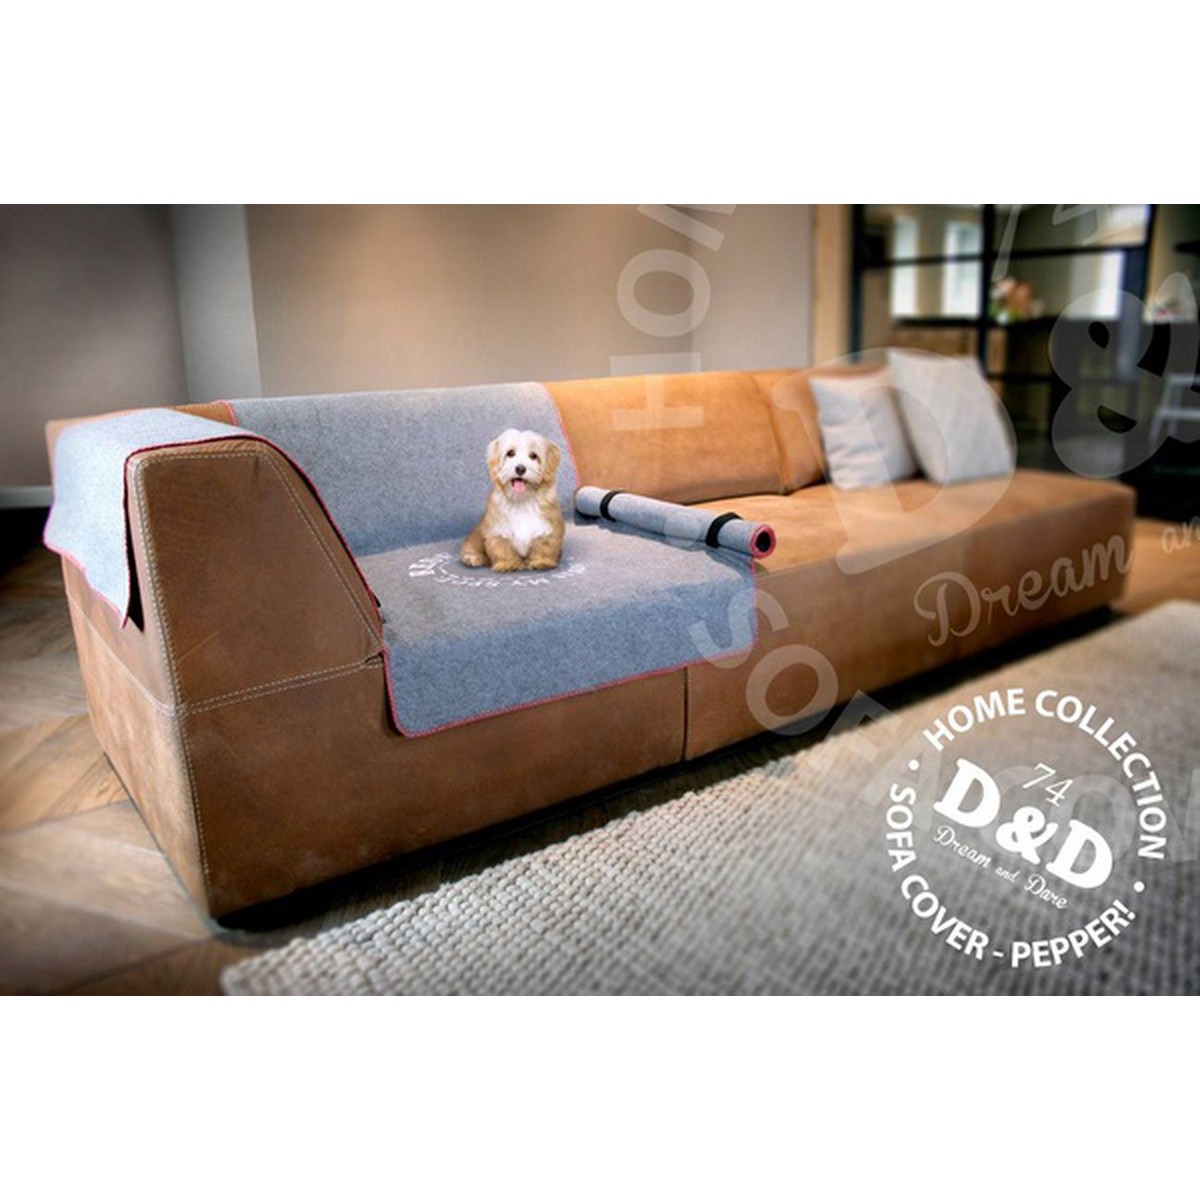   Plaid canapé Sofa Cover, gris, 240 x 155 cm  240x155cm